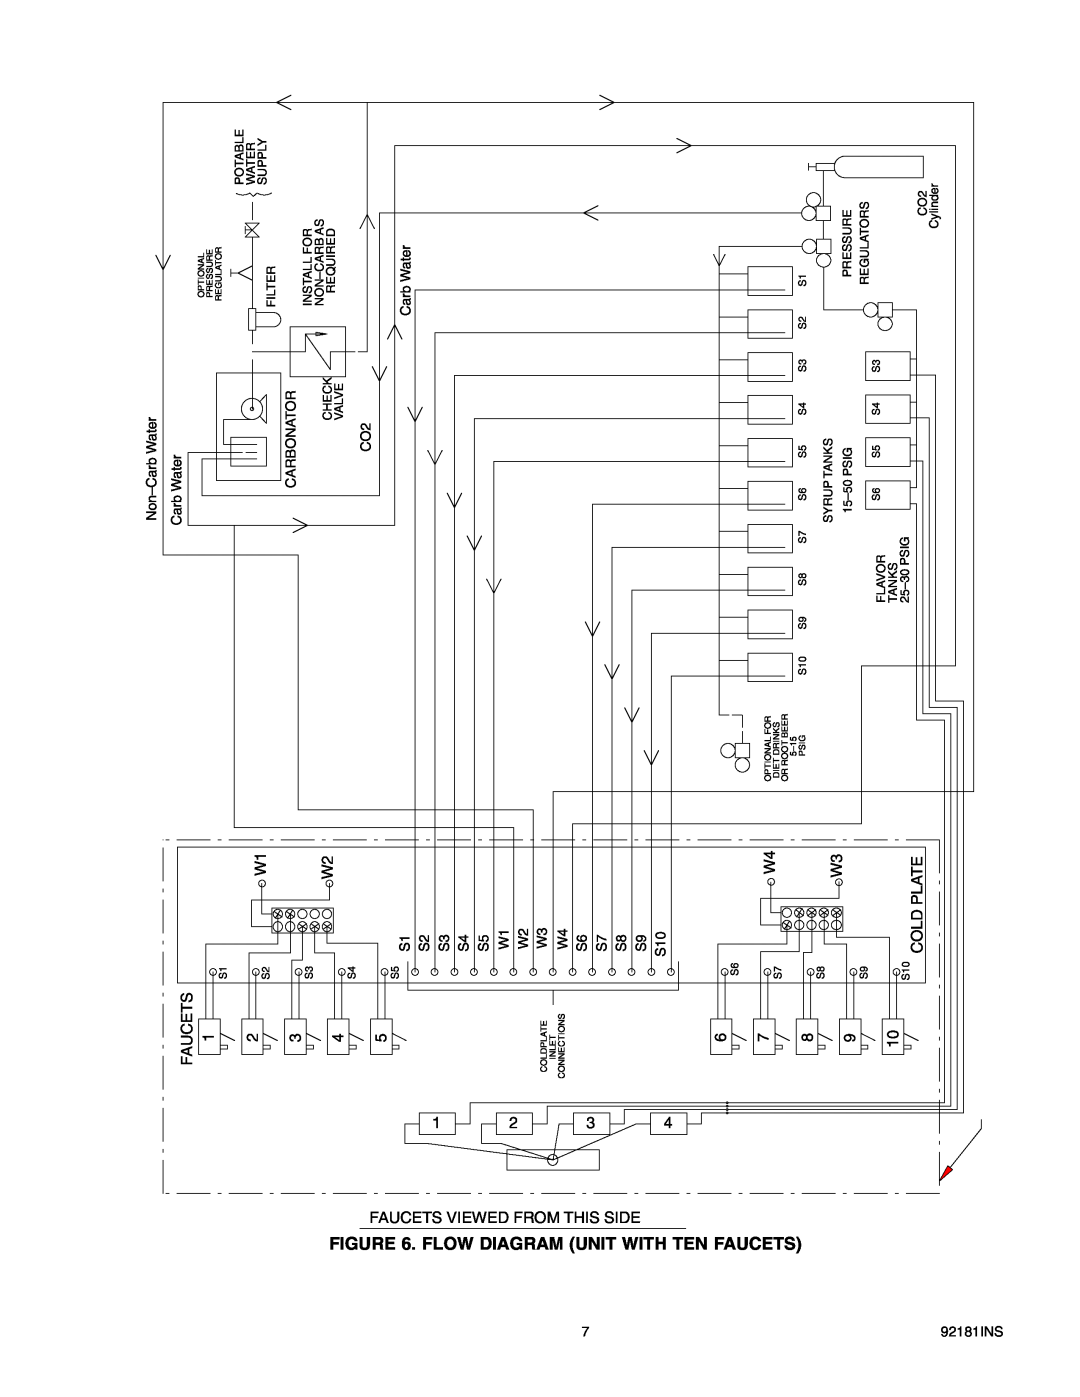 Cornelius Enduro-200/250 installation manual Flowdiagram, Unit With 